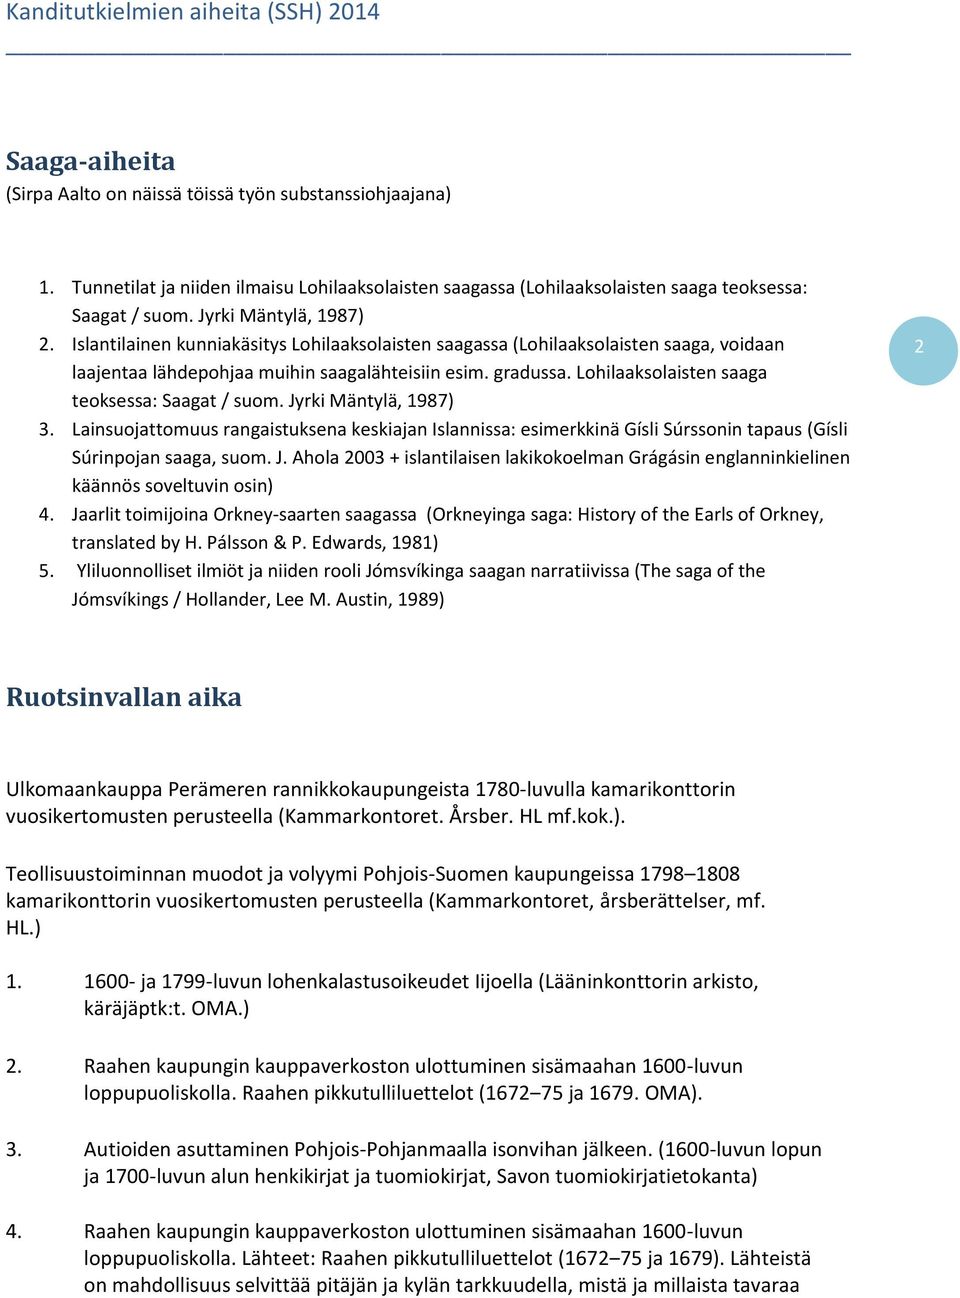 Lohilaaksolaisten saaga teoksessa: Saagat / suom. Jyrki Mäntylä, 1987) 3. Lainsuojattomuus rangaistuksena keskiajan Islannissa: esimerkkinä Gísli Súrssonin tapaus (Gísli Súrinpojan saaga, suom. J. Ahola 2003 + islantilaisen lakikokoelman Grágásin englanninkielinen käännös soveltuvin osin) 4.